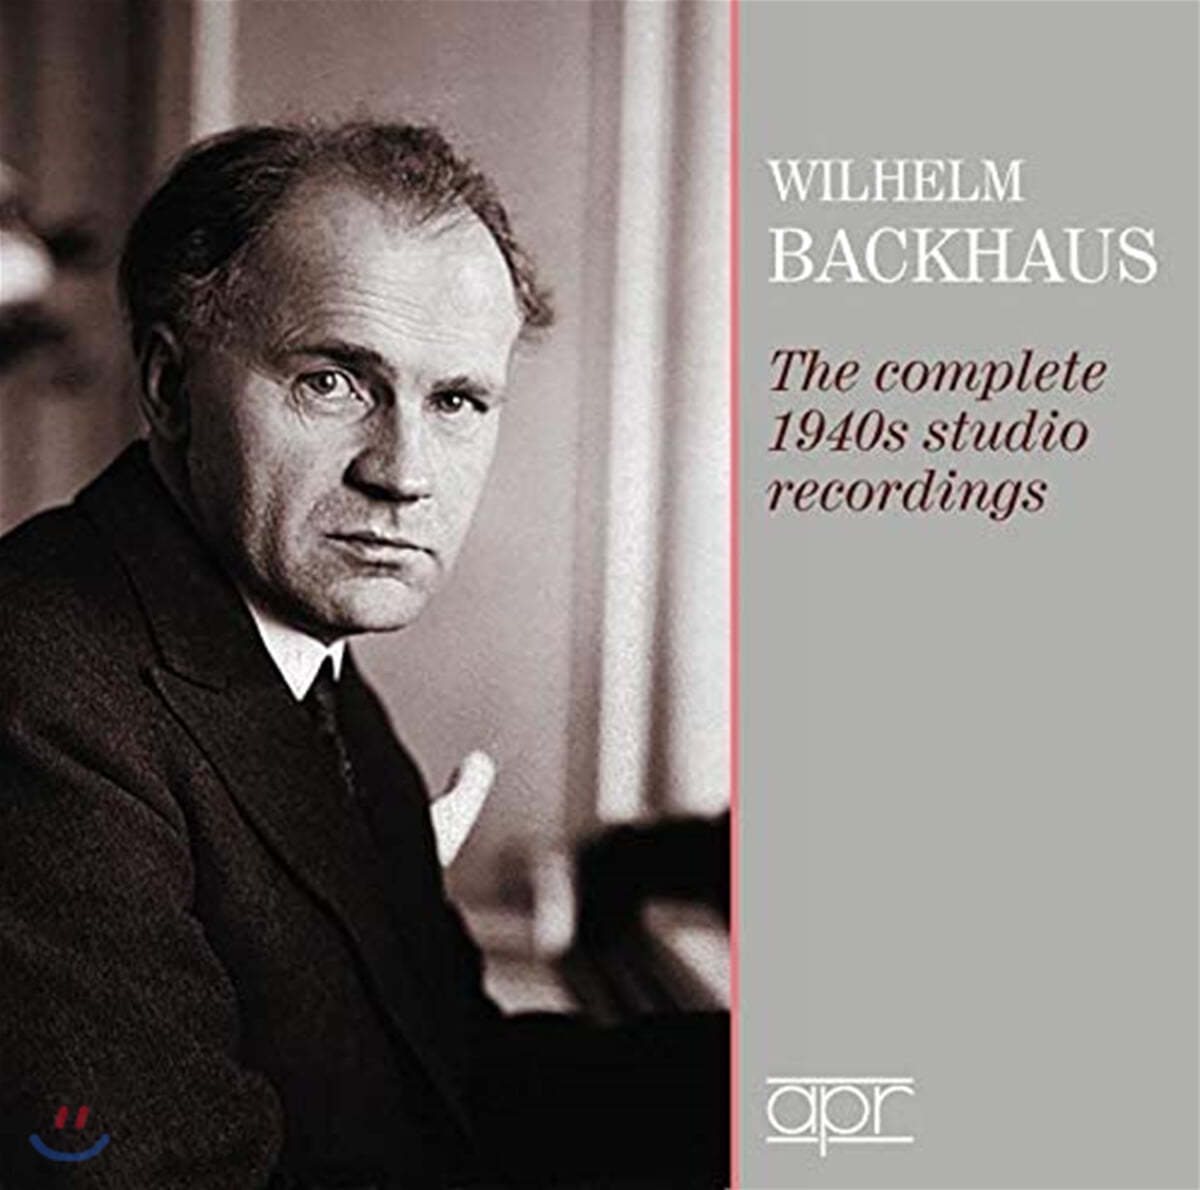 빌헬름 박하우스 - 1940년대 스튜디오 녹음 전곡 (Wilhelm Backhaus: The Complete 1940s Studio Recordings) 